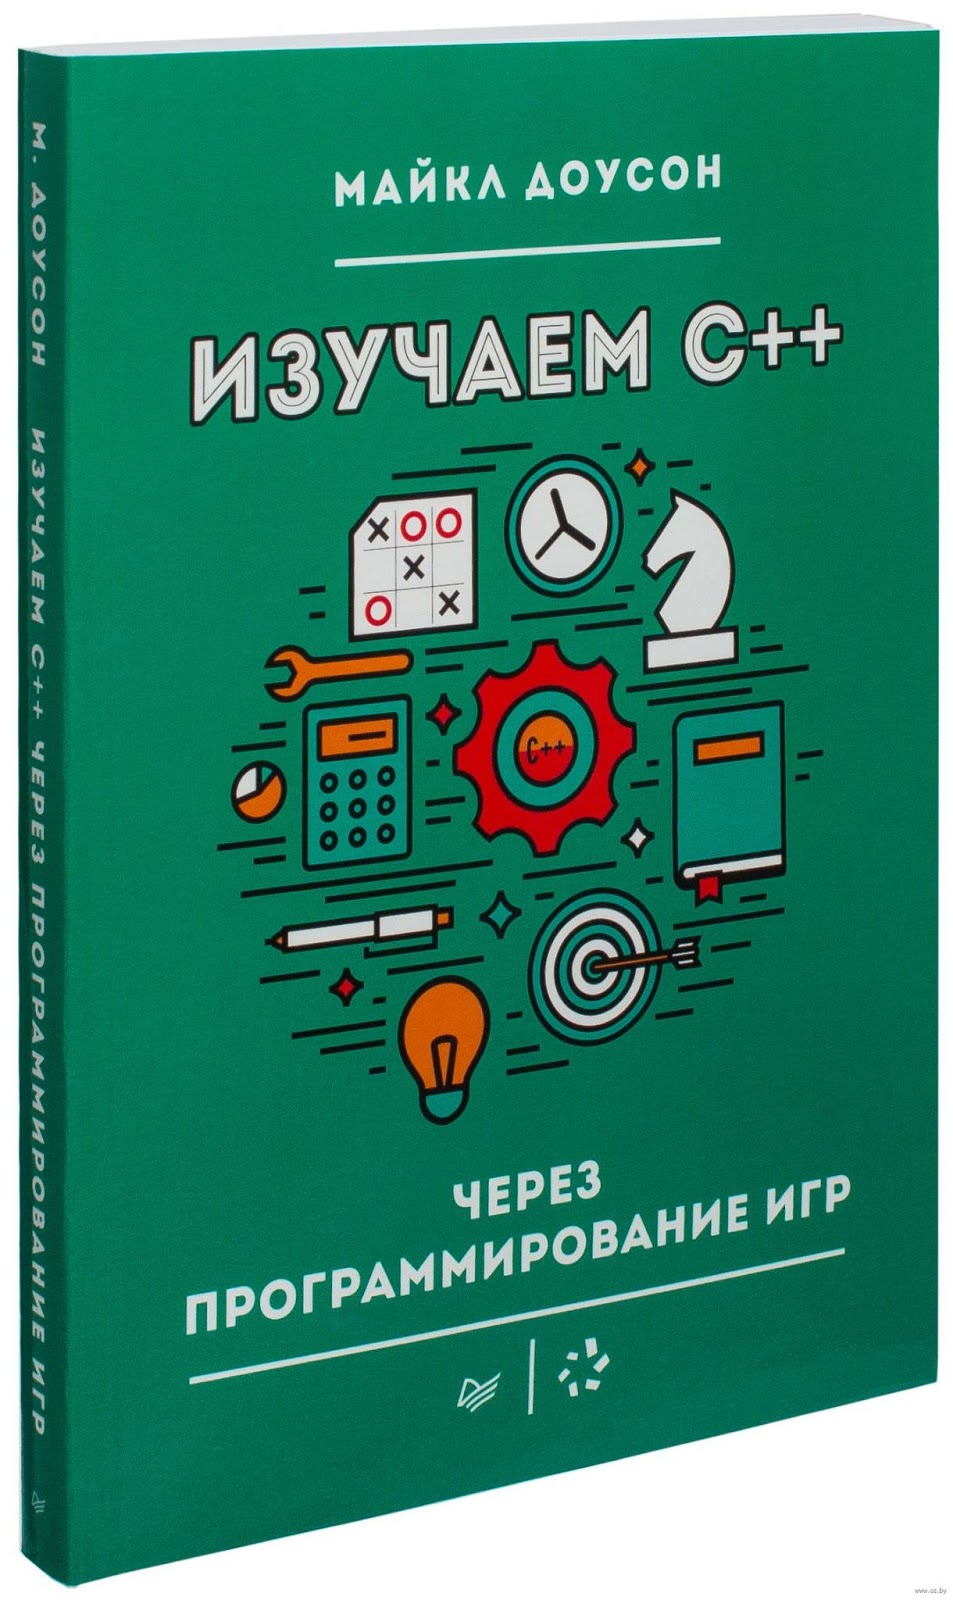   Топ-10 книг по геймдеву и о геймдеве на русском языке